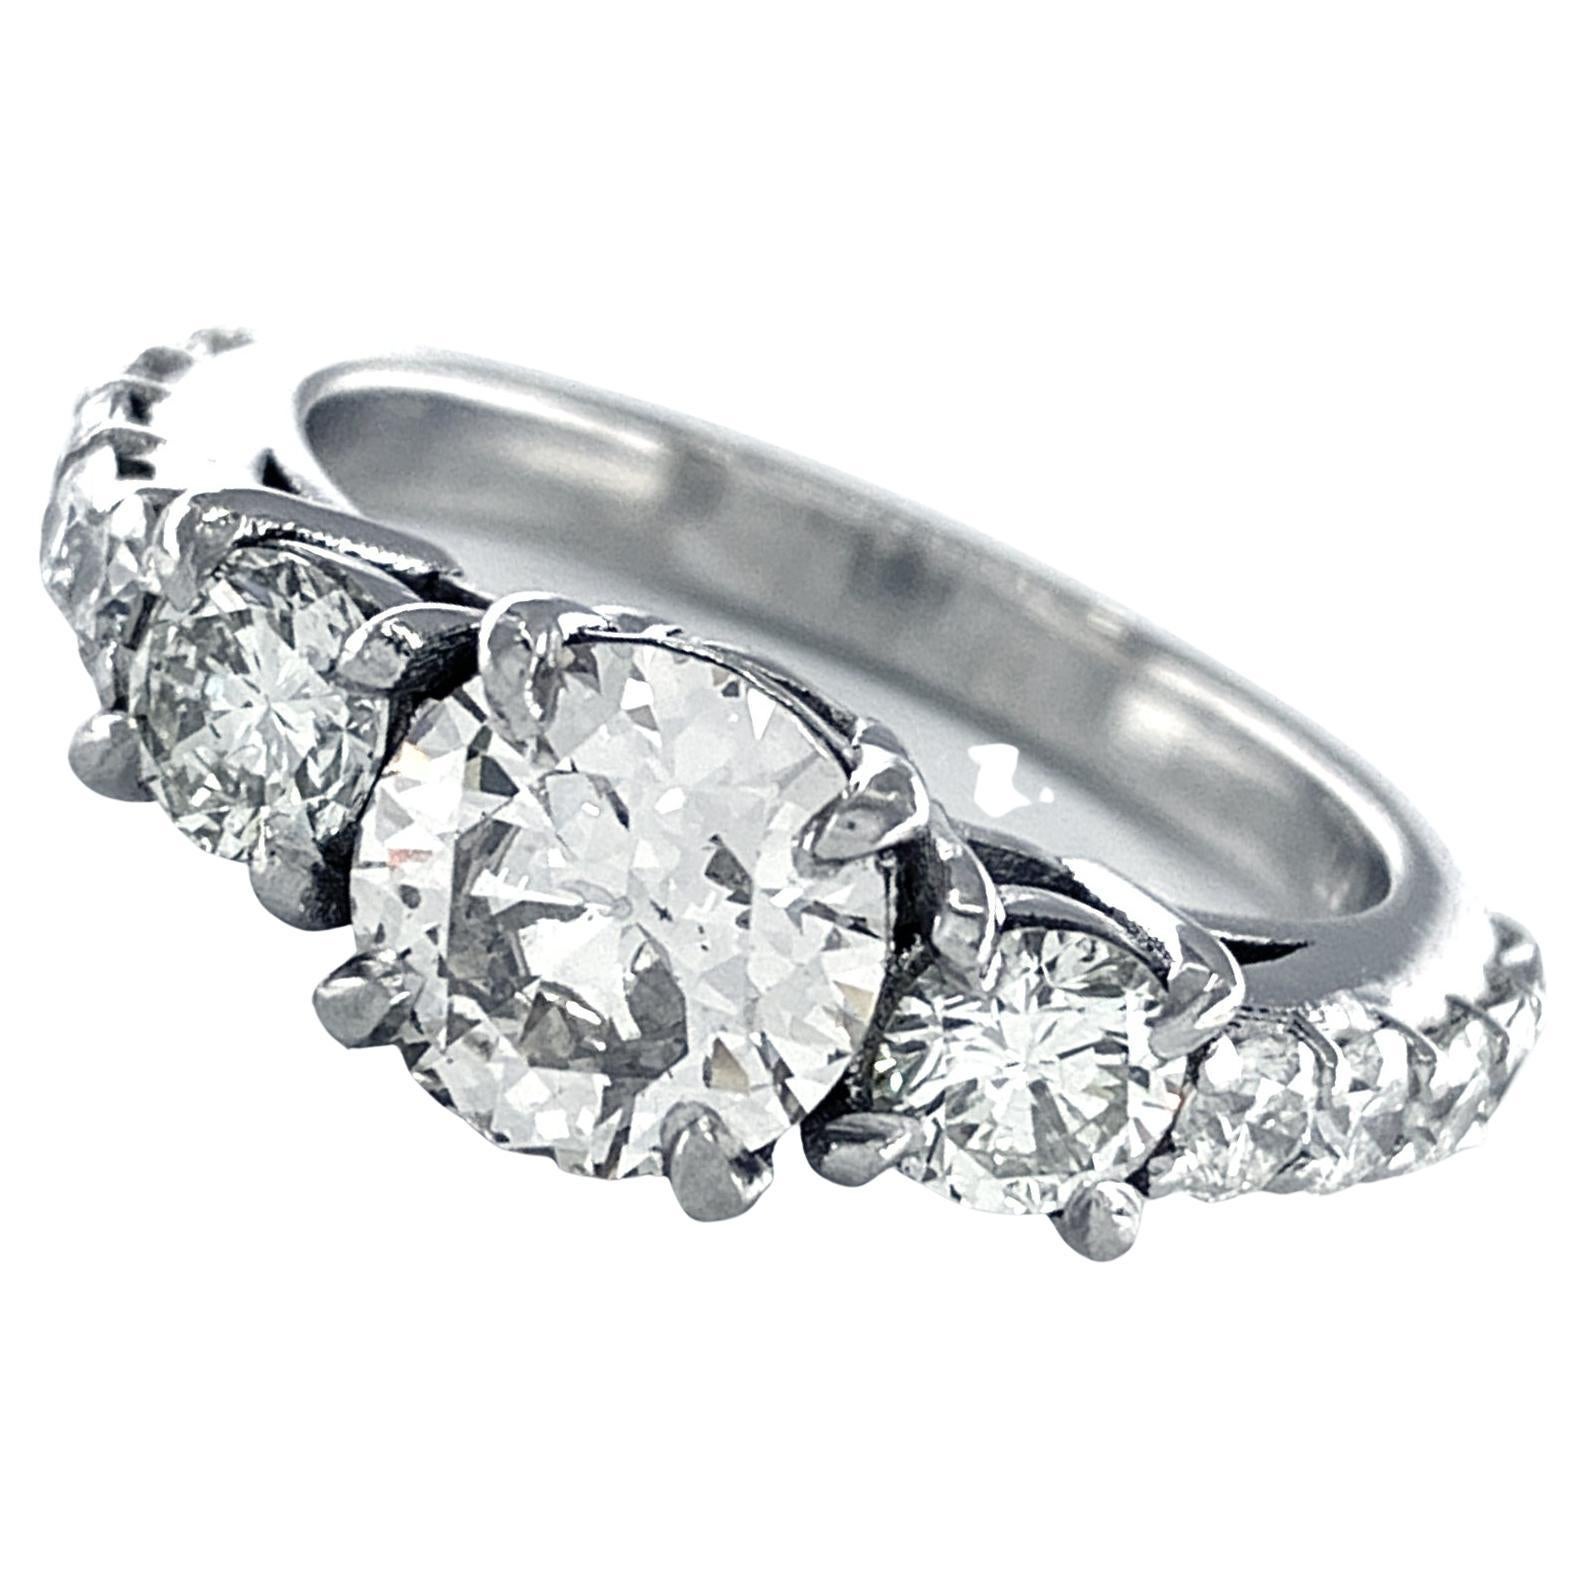 GIA Certified 1.22 Carat Older Cut Diamond in Modern Platinum Engagement Ring